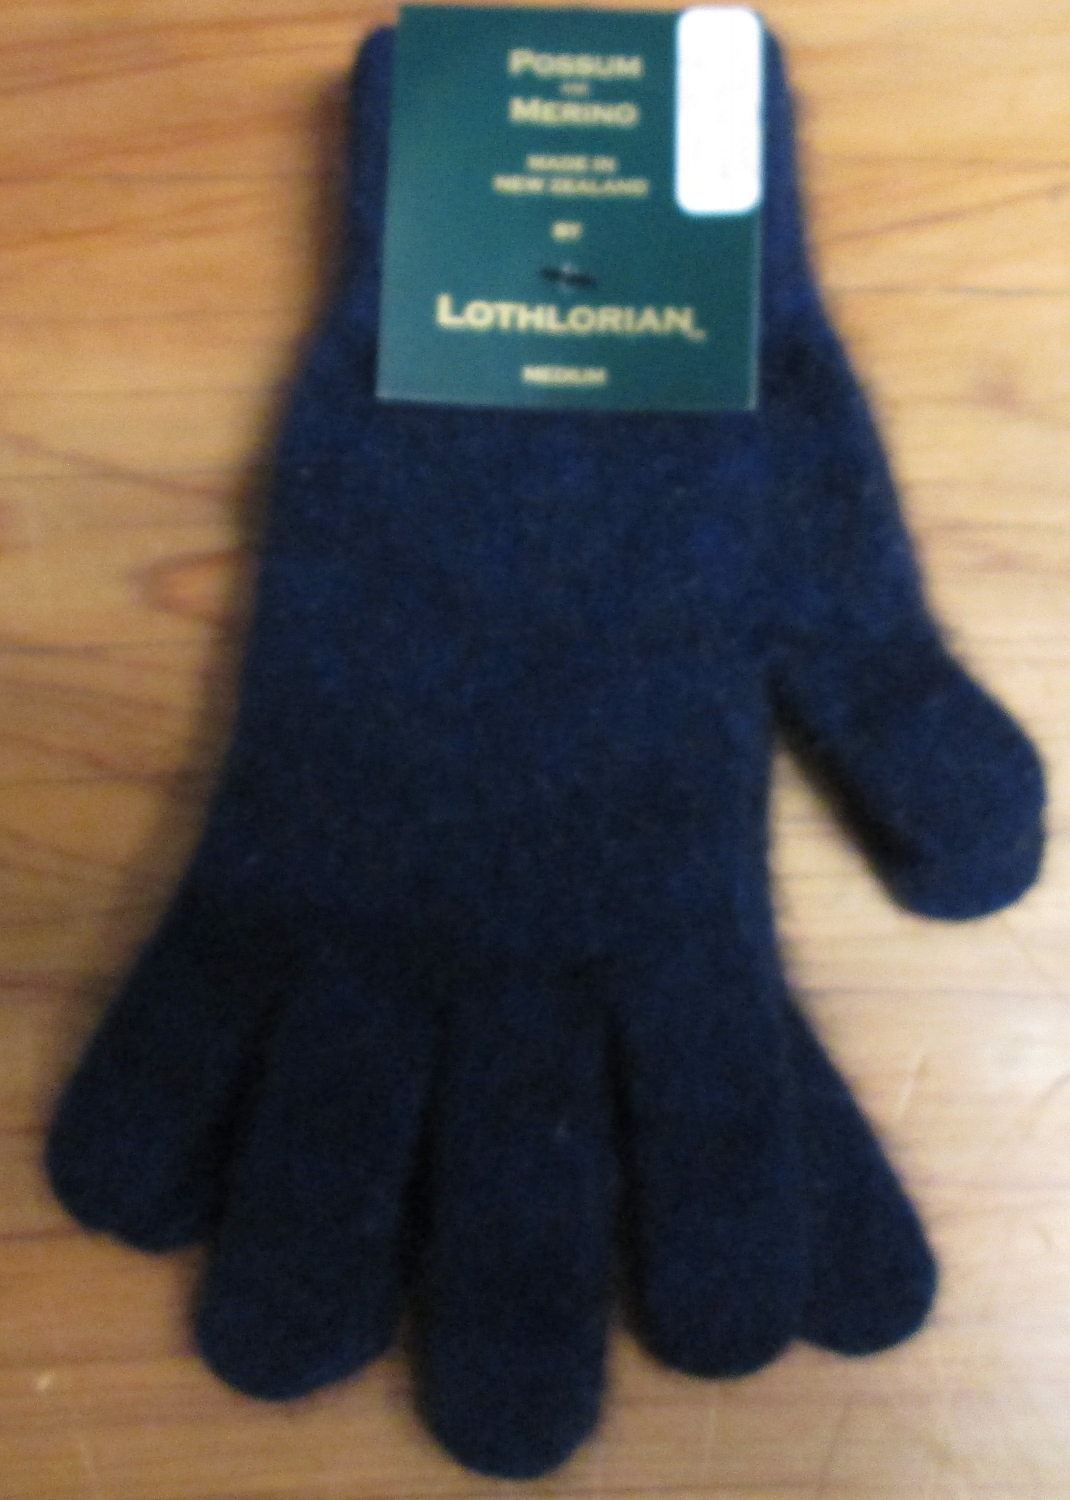 Waipu Museum/Online Shop/Lothlorian Possum-Merino Gloves